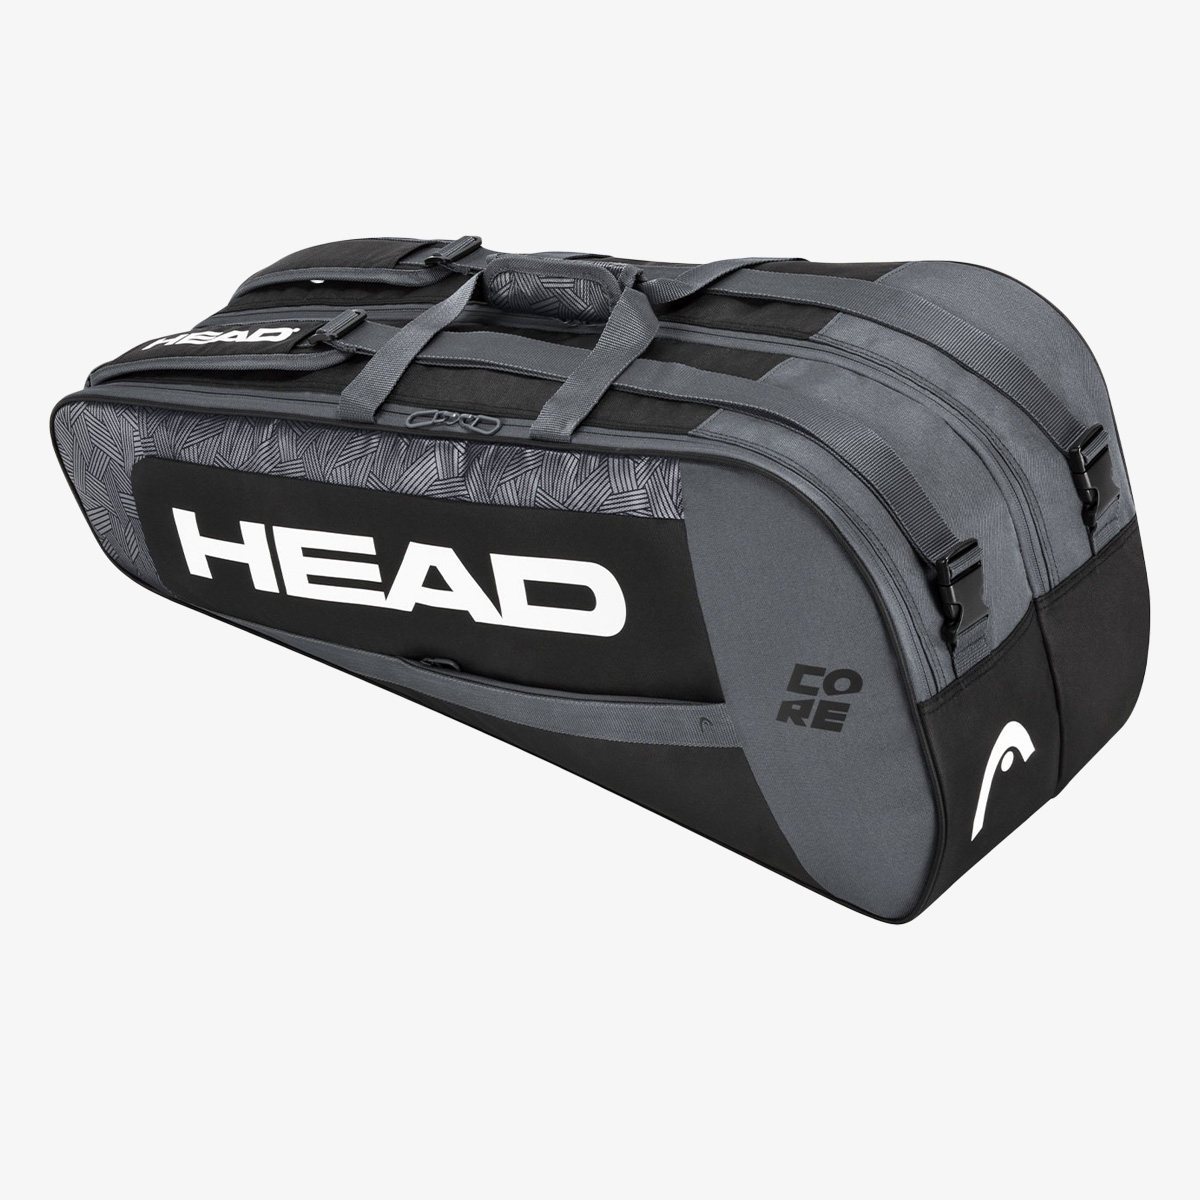 Head Core 6R Combi 